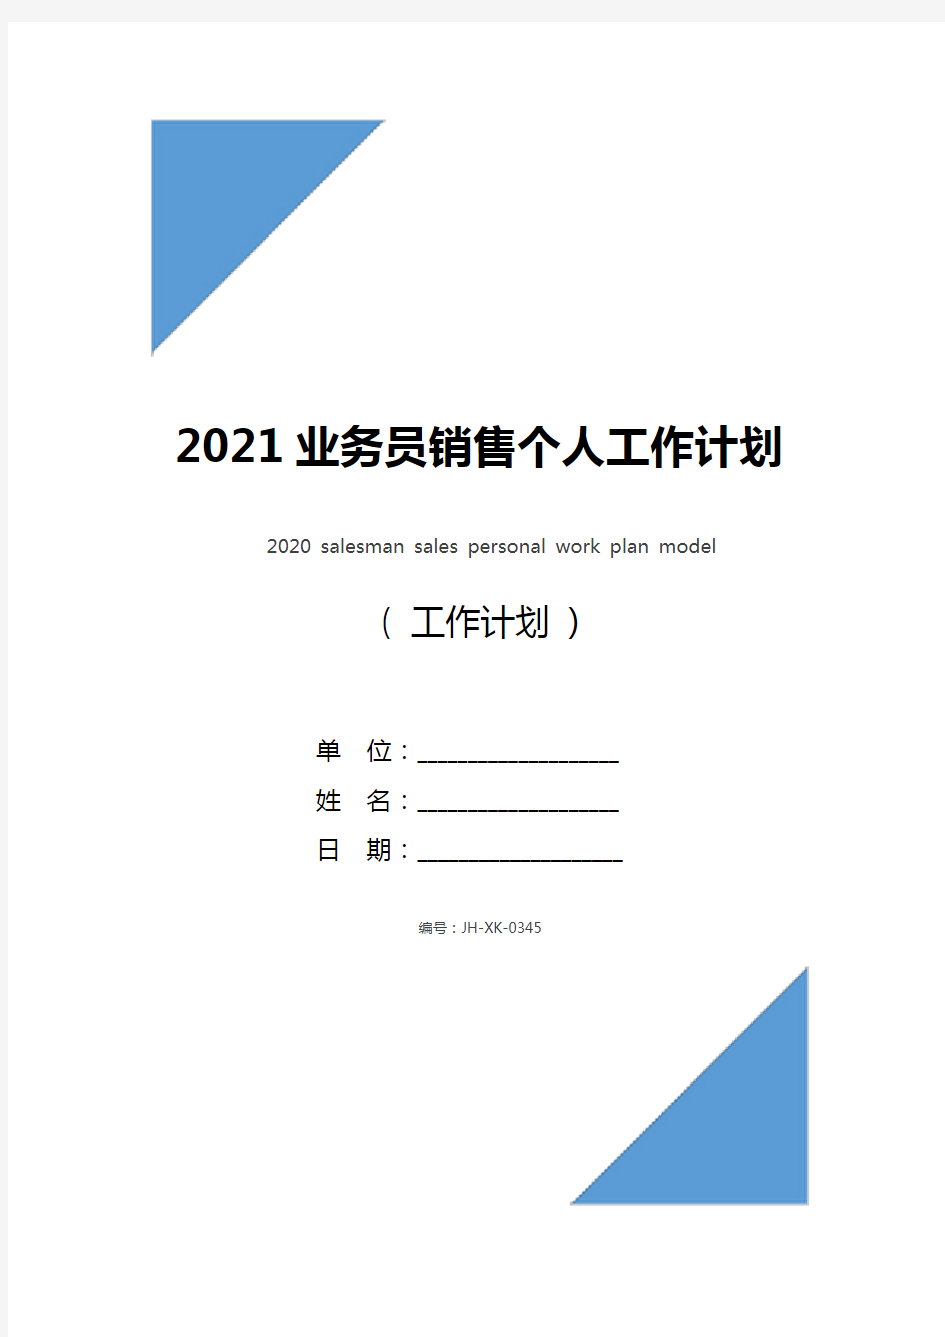 2021业务员销售个人工作计划范文(标准版)